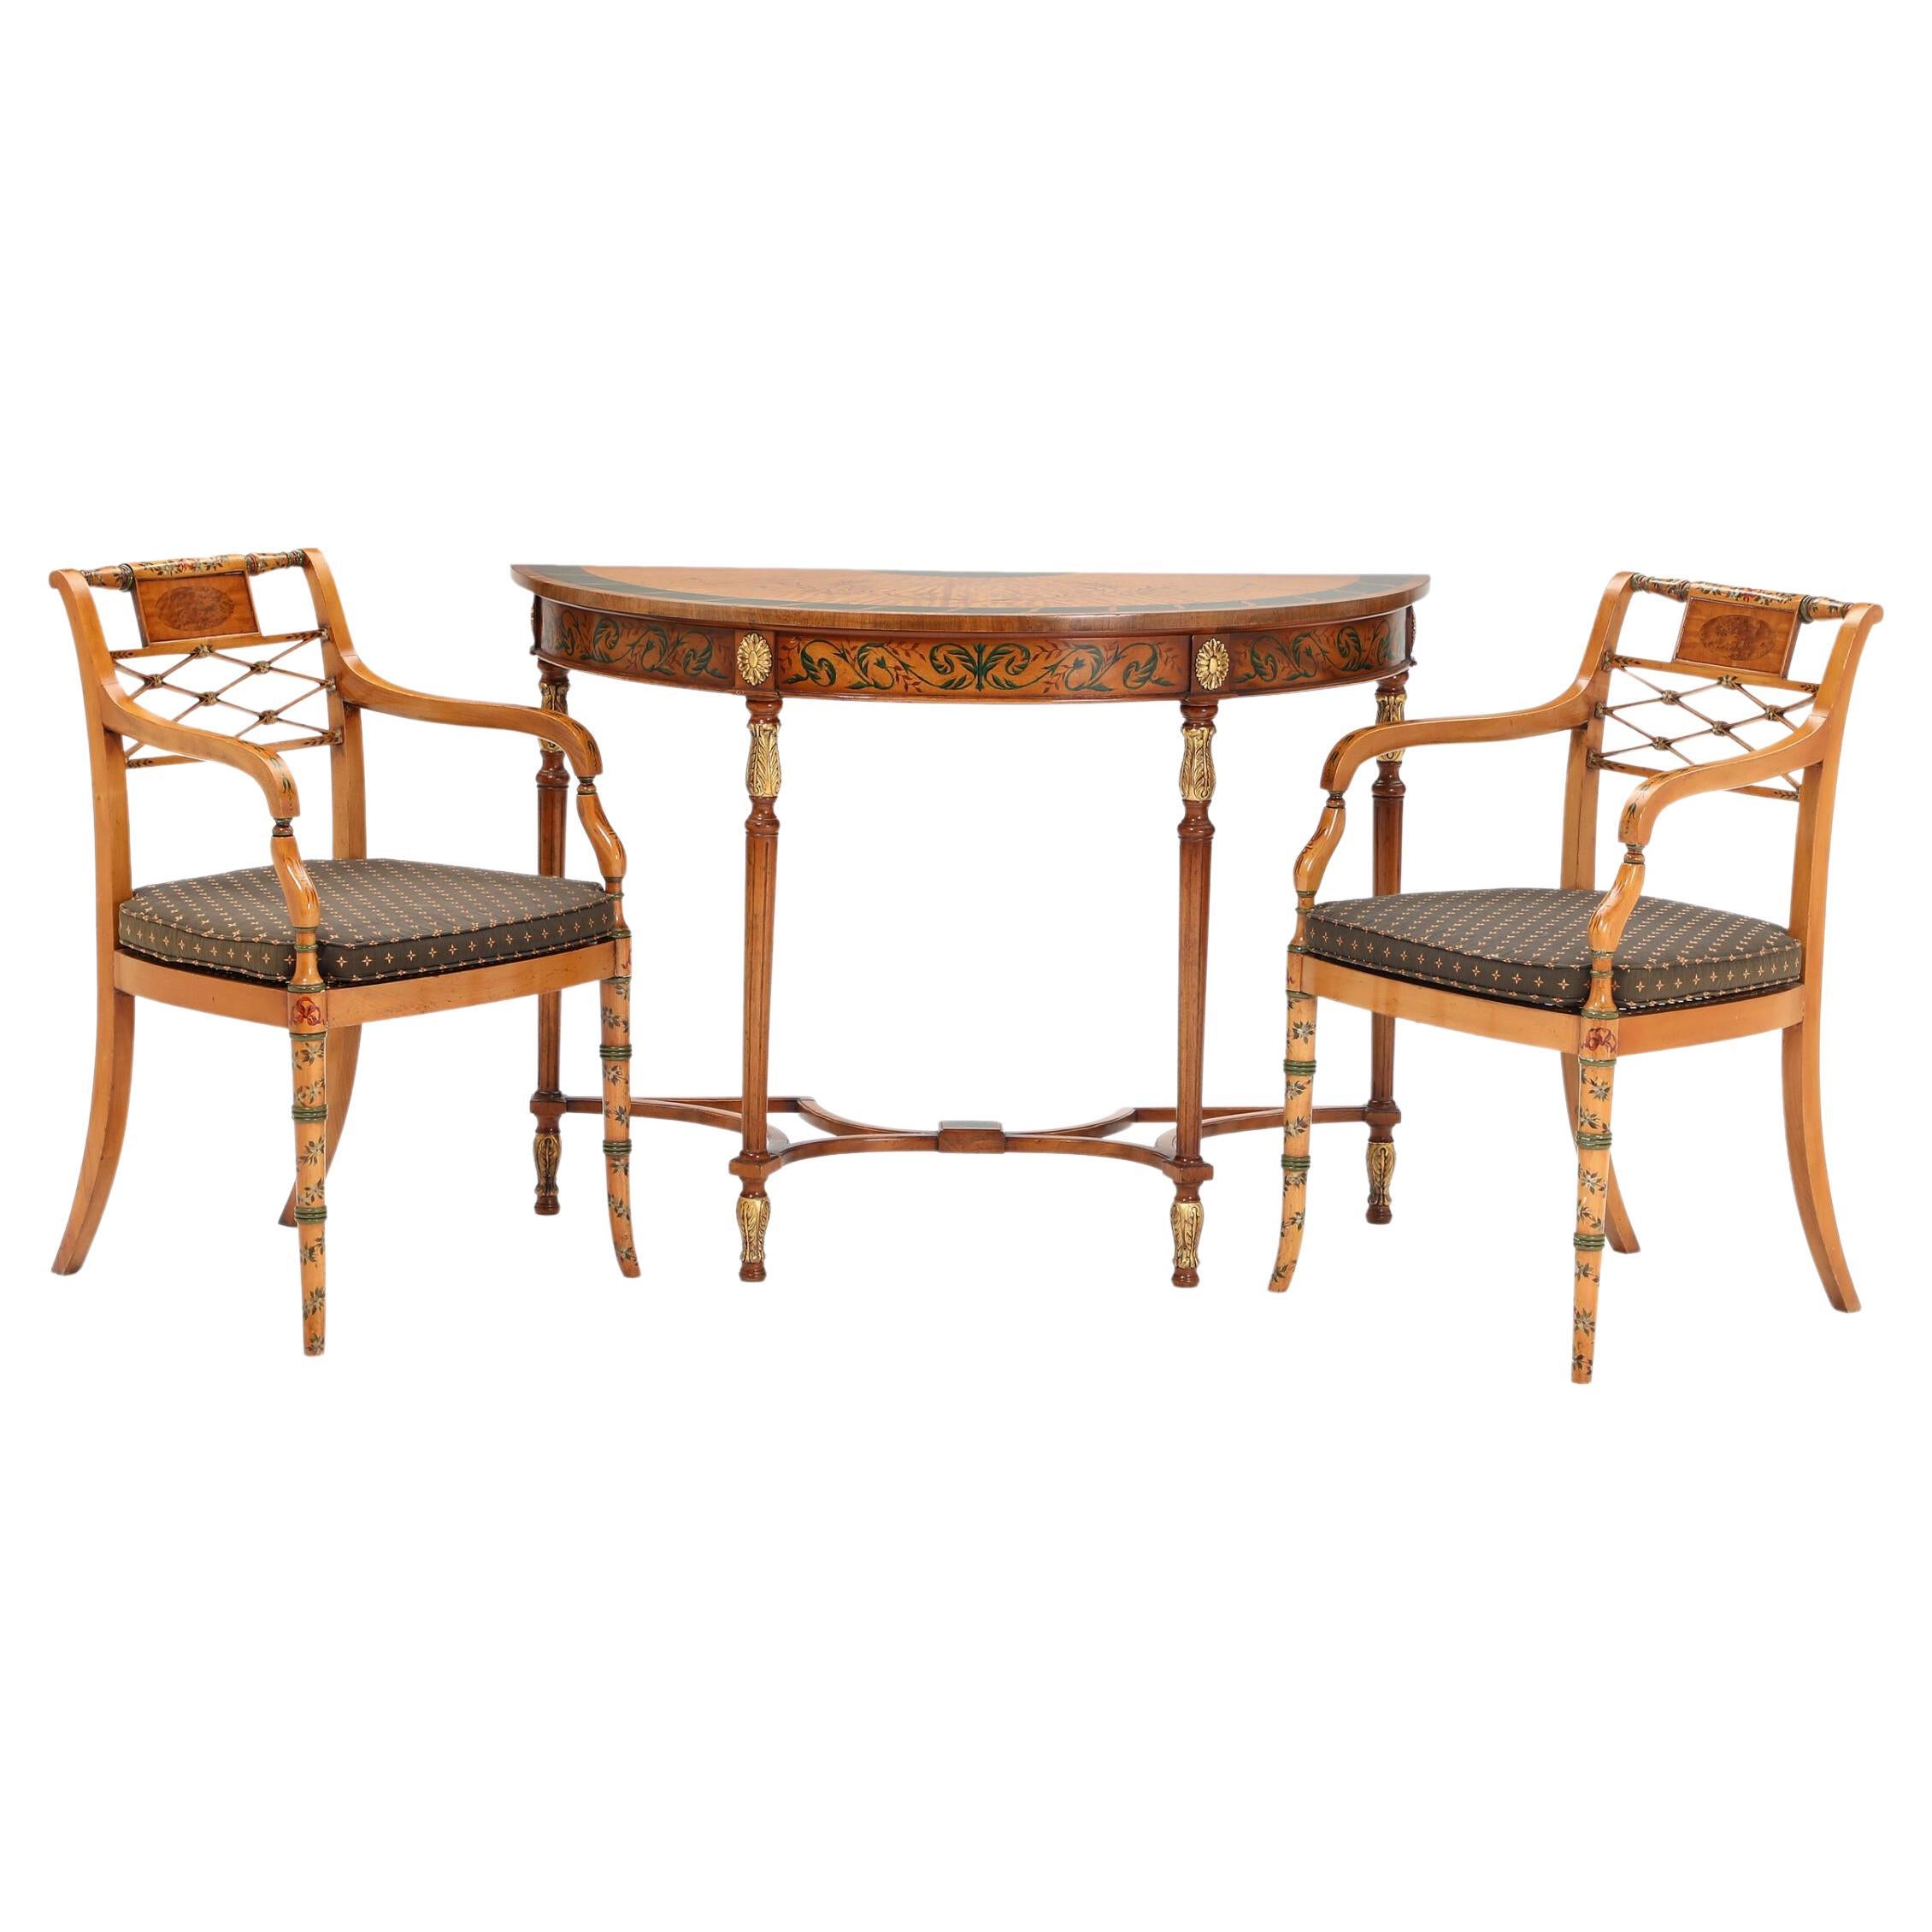 Magnifique paire de chaises anciennes de style Sheraton datant des années 1930